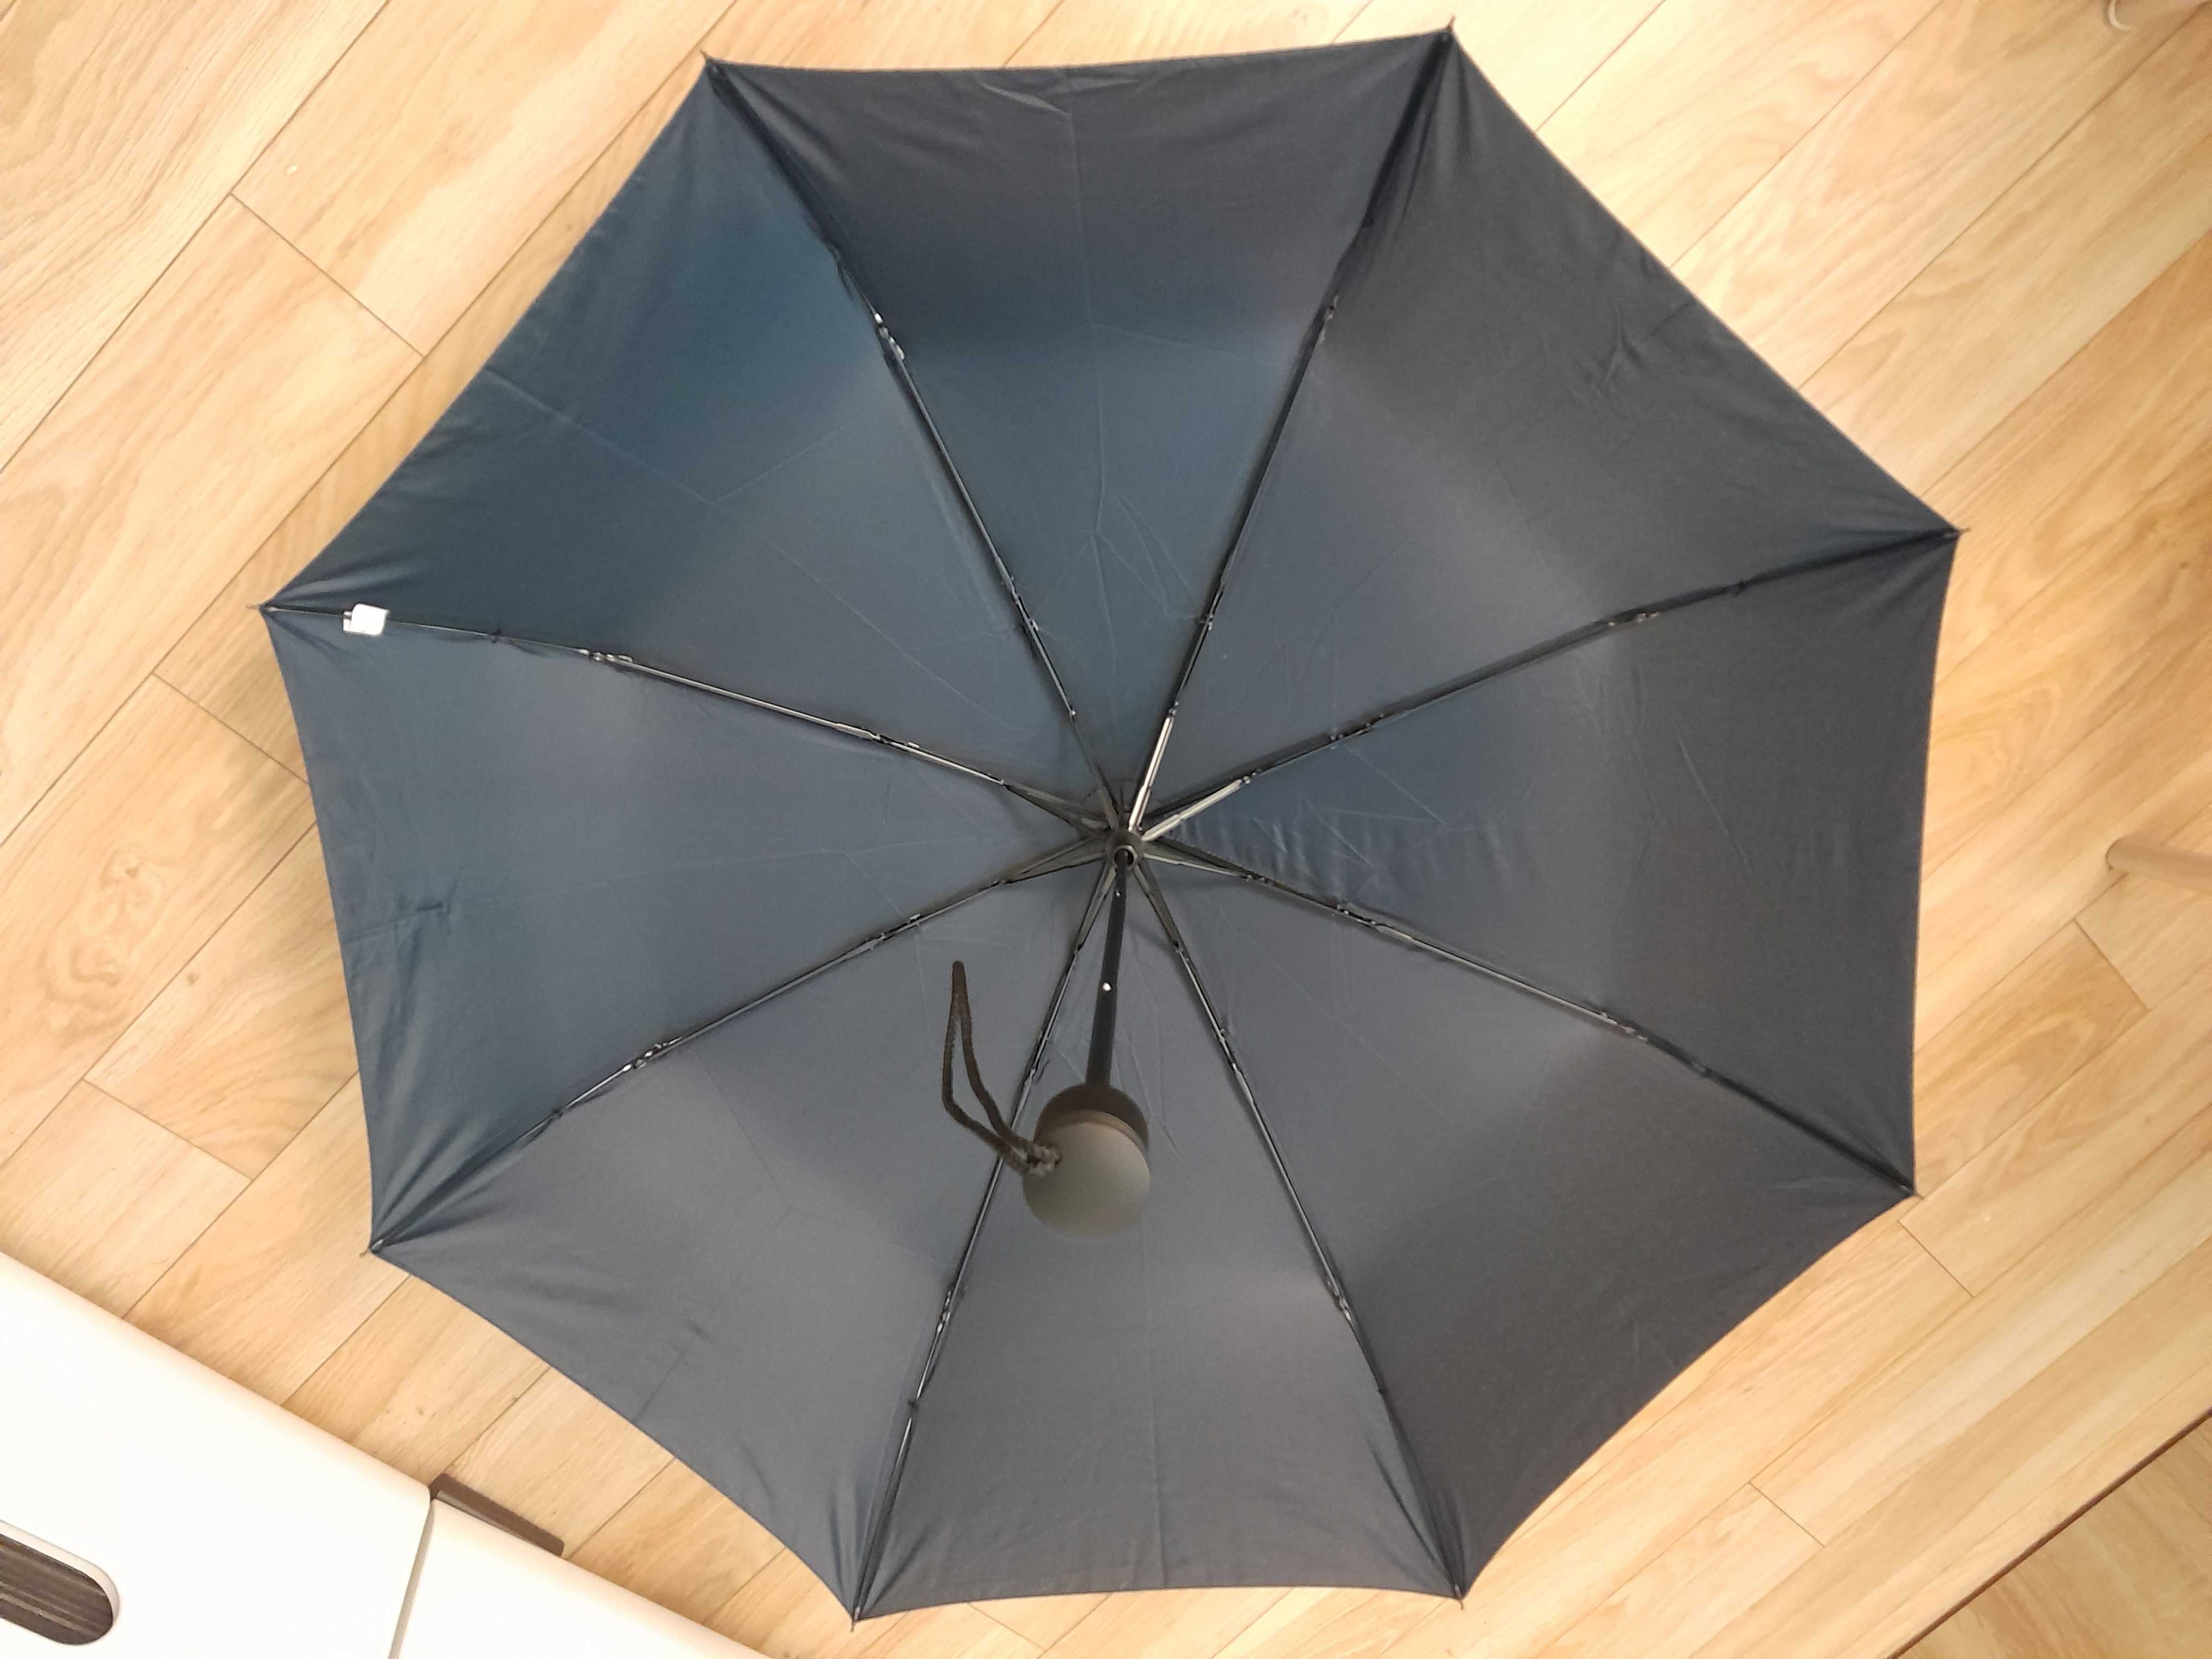 Nowy mini parasol półautomatyczny_Windproof_Umbrella_89 cm, granatowy